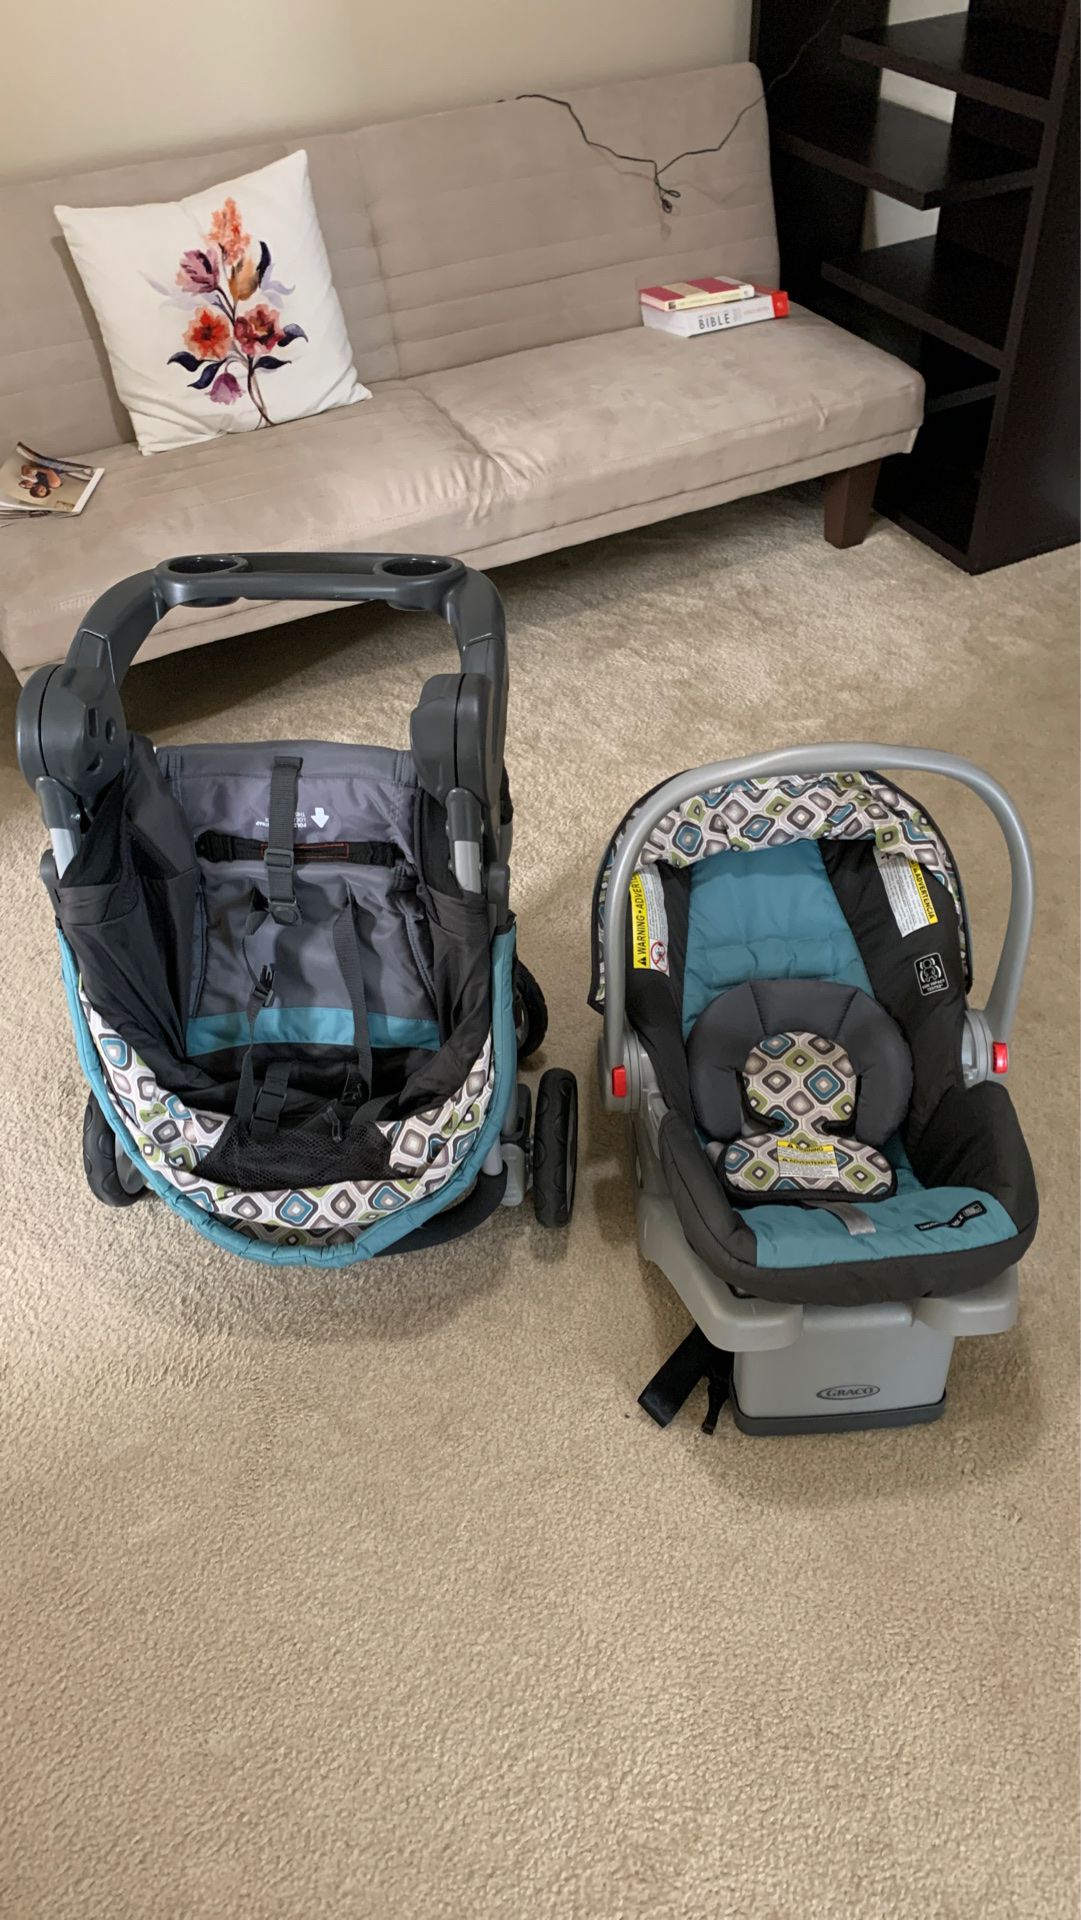 Car seat/stroller set